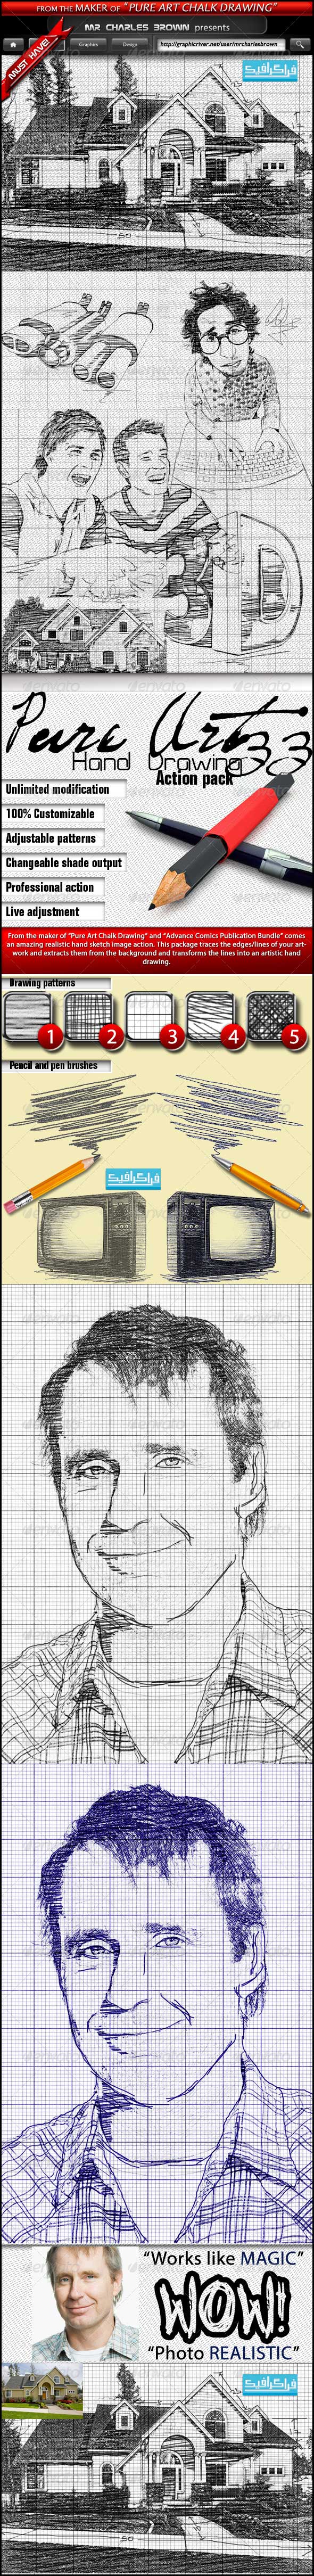 اکشن فتوشاپ تبدیل عکس به نقاشی رسم شده با مداد - شماره 4